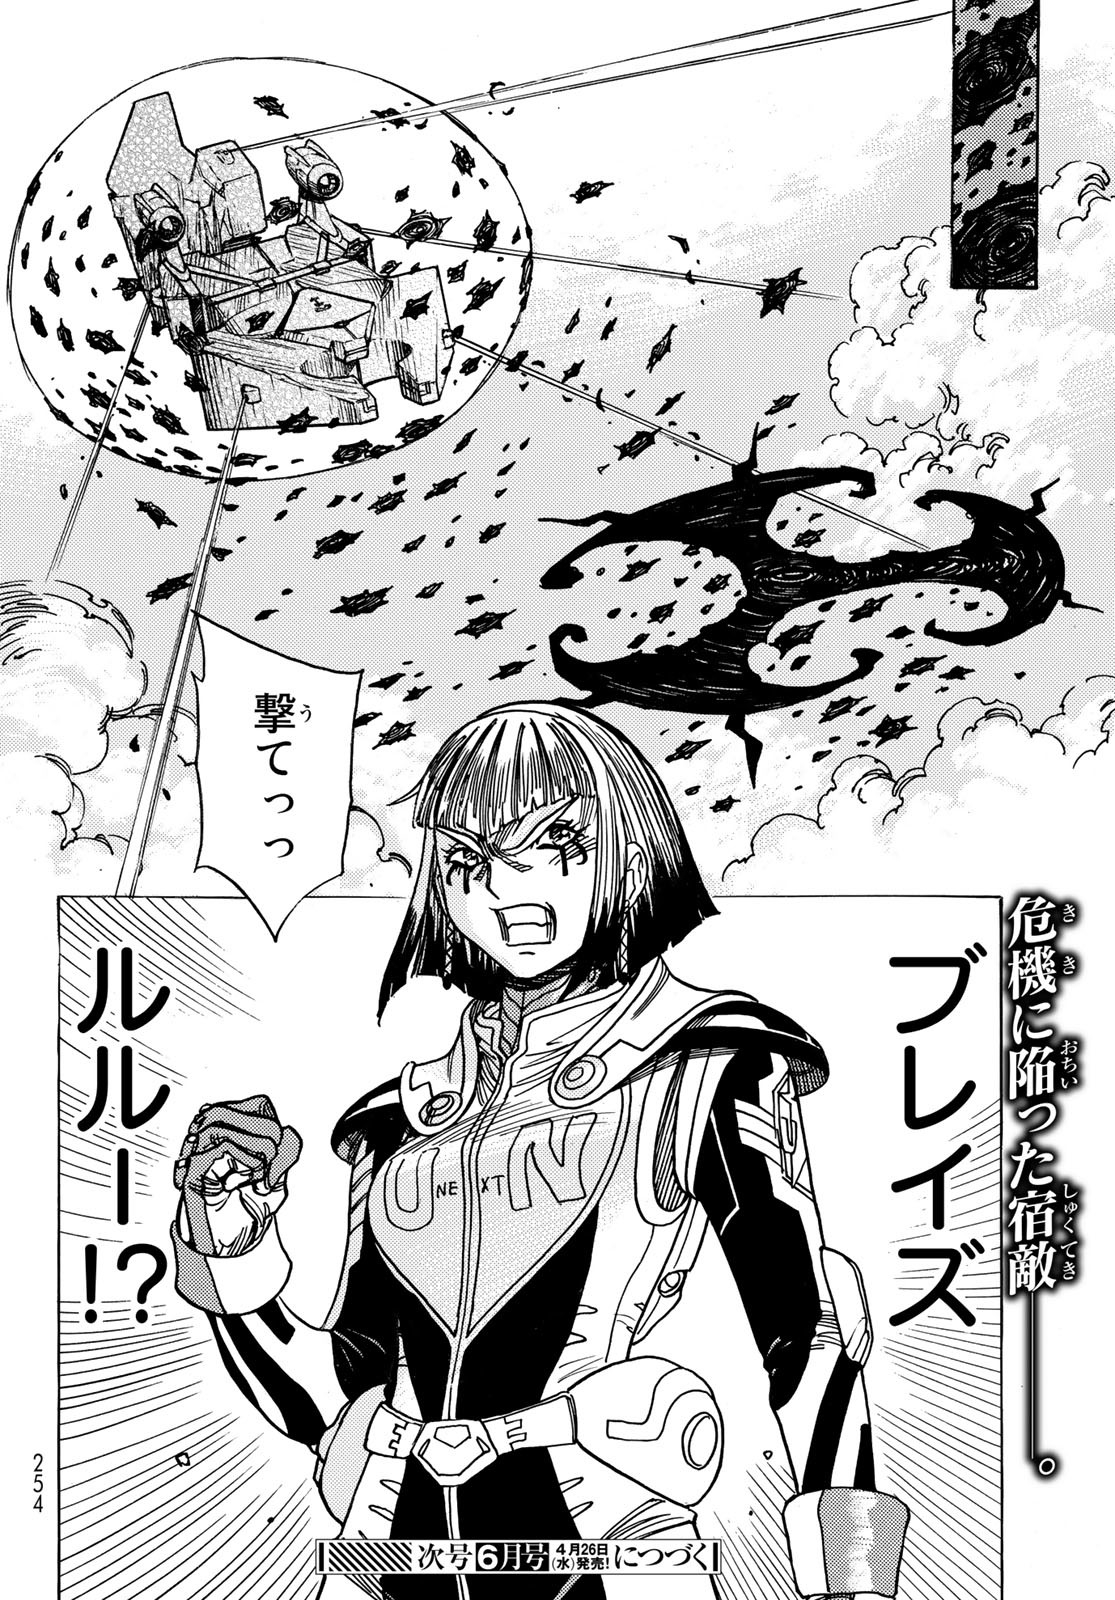 Mugou no Schnell Gear: Chikyuugai Kisouka AI - Chapter 46 - Page 20